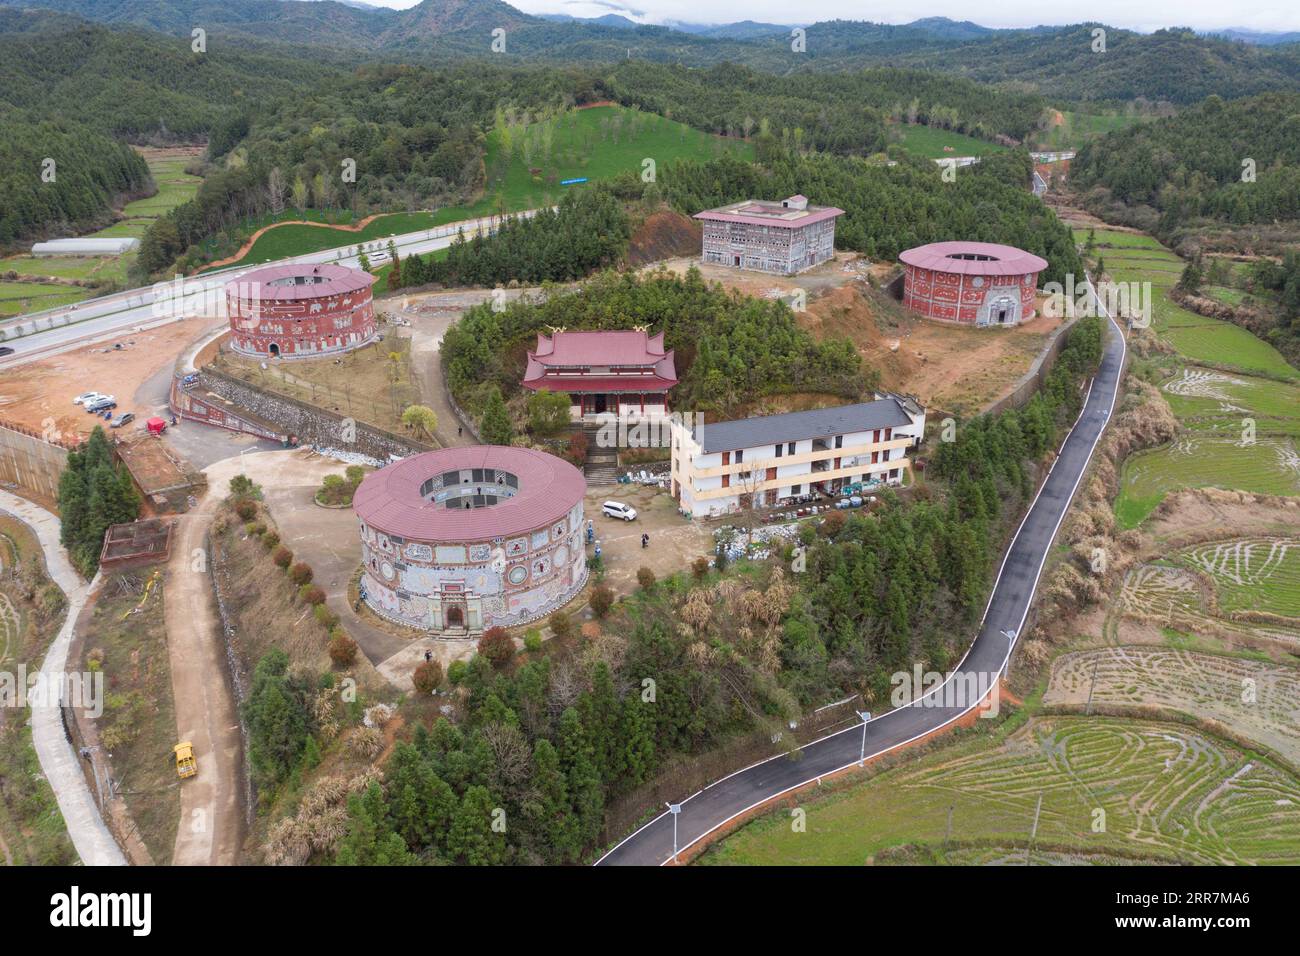 210331 -- NANCHANG, le 31 mars 2021 -- une photo aérienne prise le 19 mars 2021 montre une vue des palais de porcelaine dans le village de Xinping du comté de Fuliang à Jingdezhen, province du Jiangxi dans l'est de la Chine. Yu Ermei, une villageoise de 91 ans qui travaillait autrefois dans une manufacture de porcelaine, a commencé à construire ses palais de porcelaine dans le village de Xinping à partir de 2011. Grâce à ses efforts, quatre bâtiments décorés de porcelaine et de pièces de porcelaine se dressent maintenant dans le village, attirant de nombreux touristes à visiter. CHINE-JIANGXI-JINGDEZHEN-PORCELAINE PALACESCN ZhouxMi PUBLICATIONxNOTxINxCHN Banque D'Images